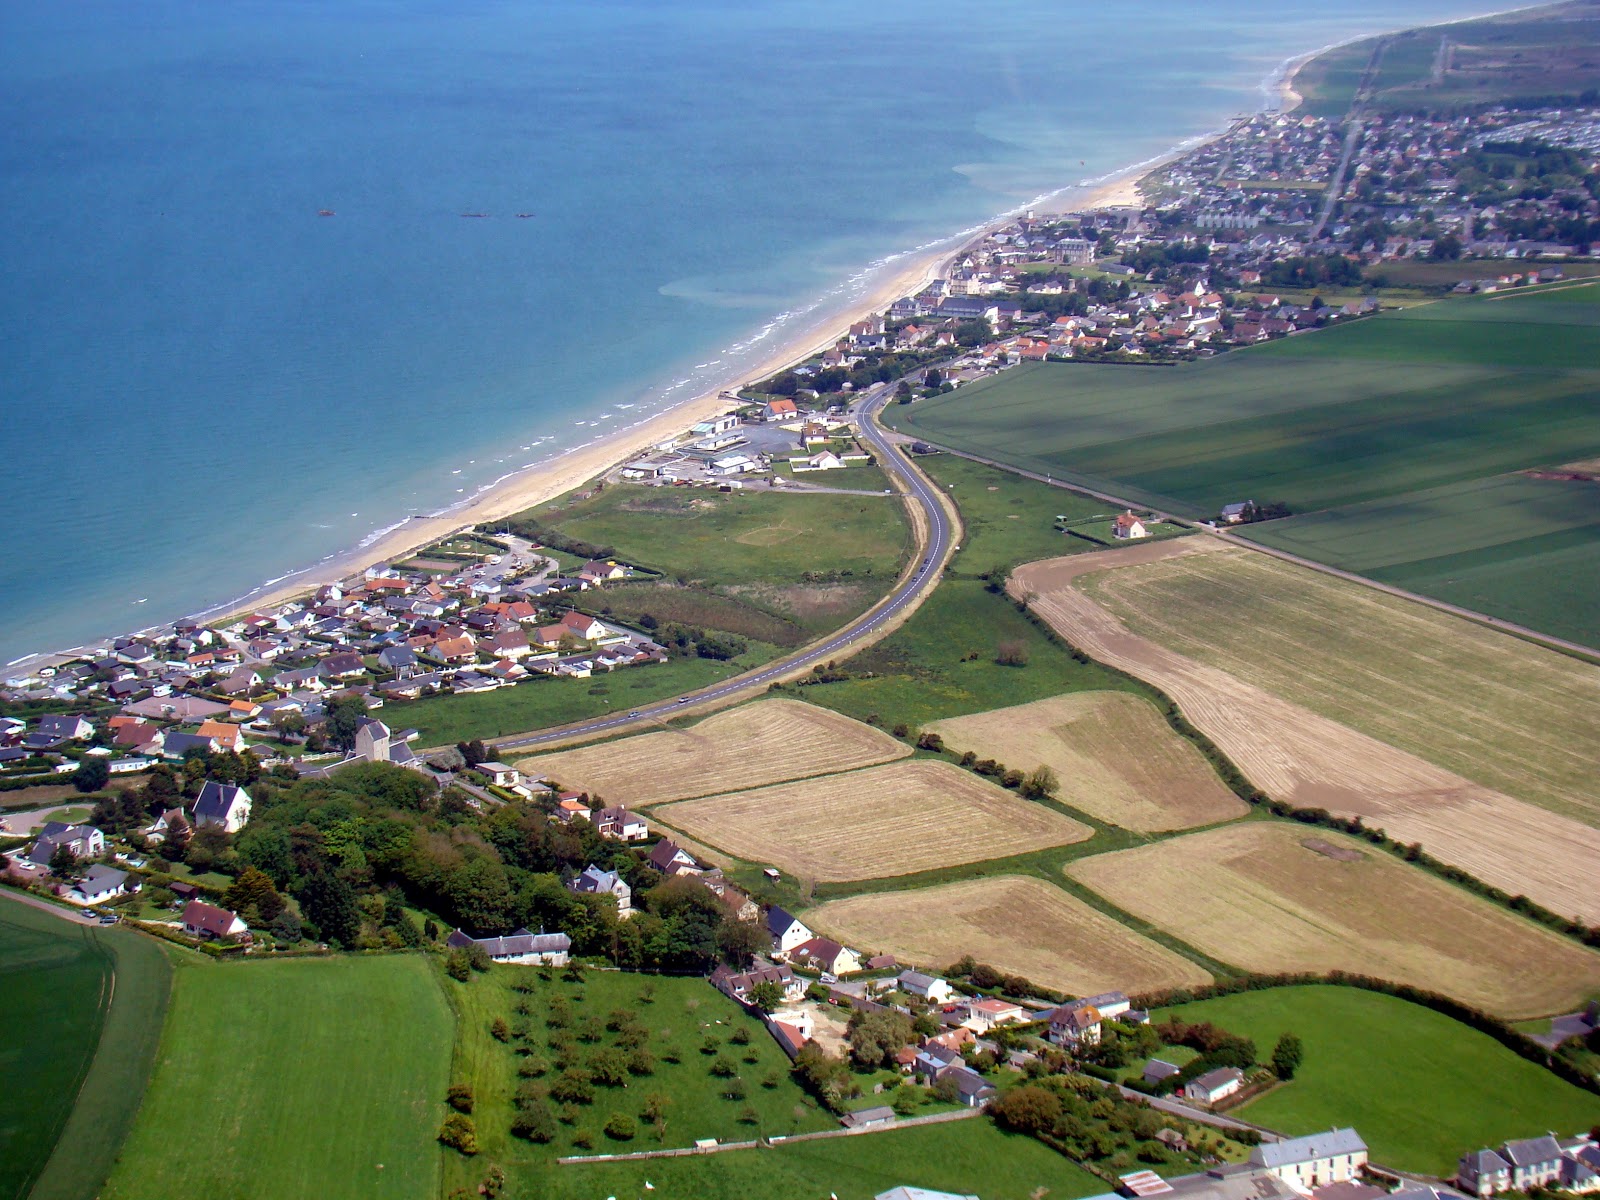 Normandy beach'in fotoğrafı imkanlar alanı